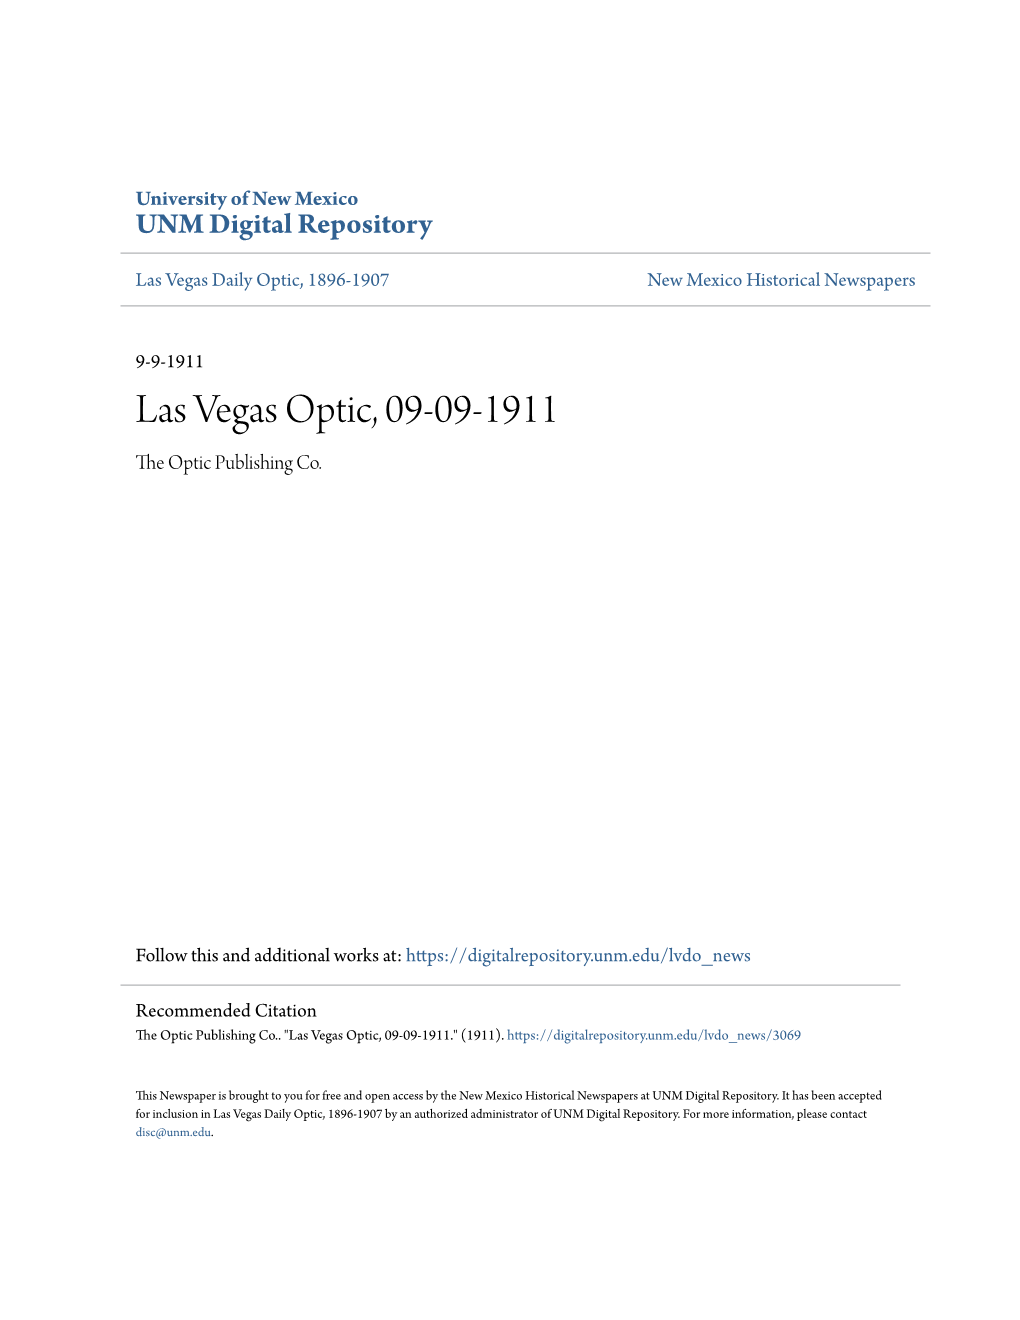 Las Vegas Optic, 09-09-1911 the Optic Publishing Co